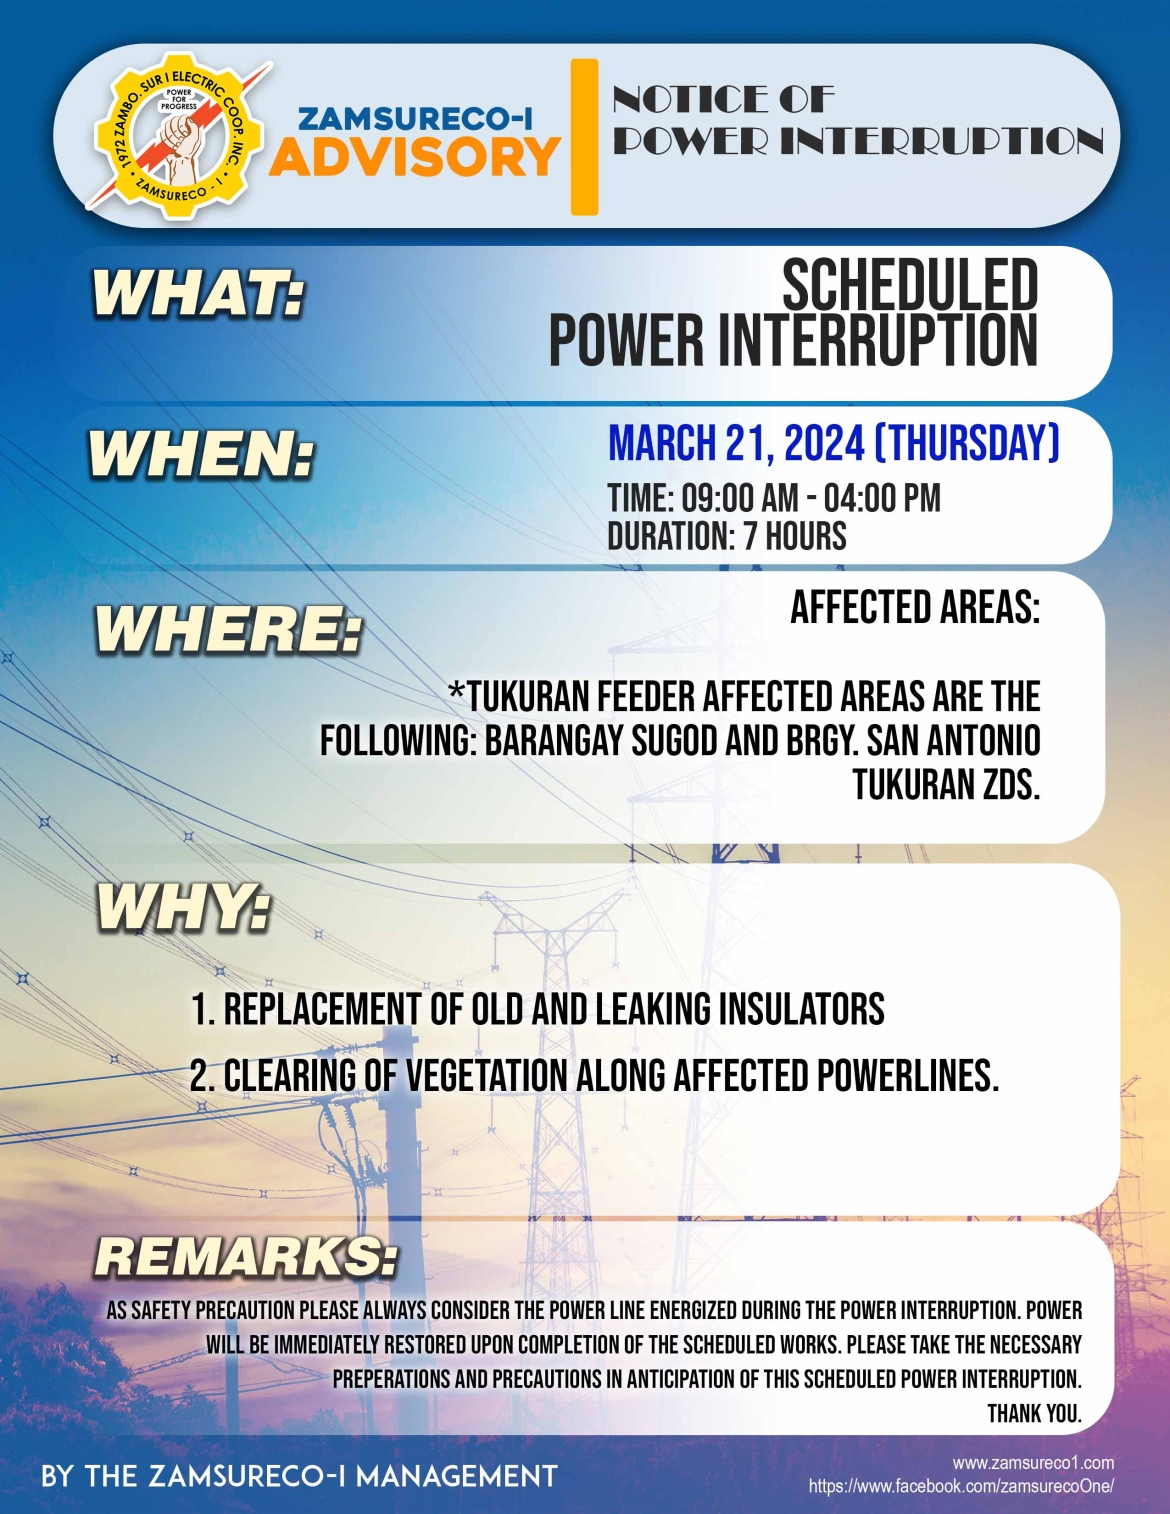 SCHEDULE POWER INTERRUPTION (March 21, 2024) between 9:00 AM - 4:00 PM